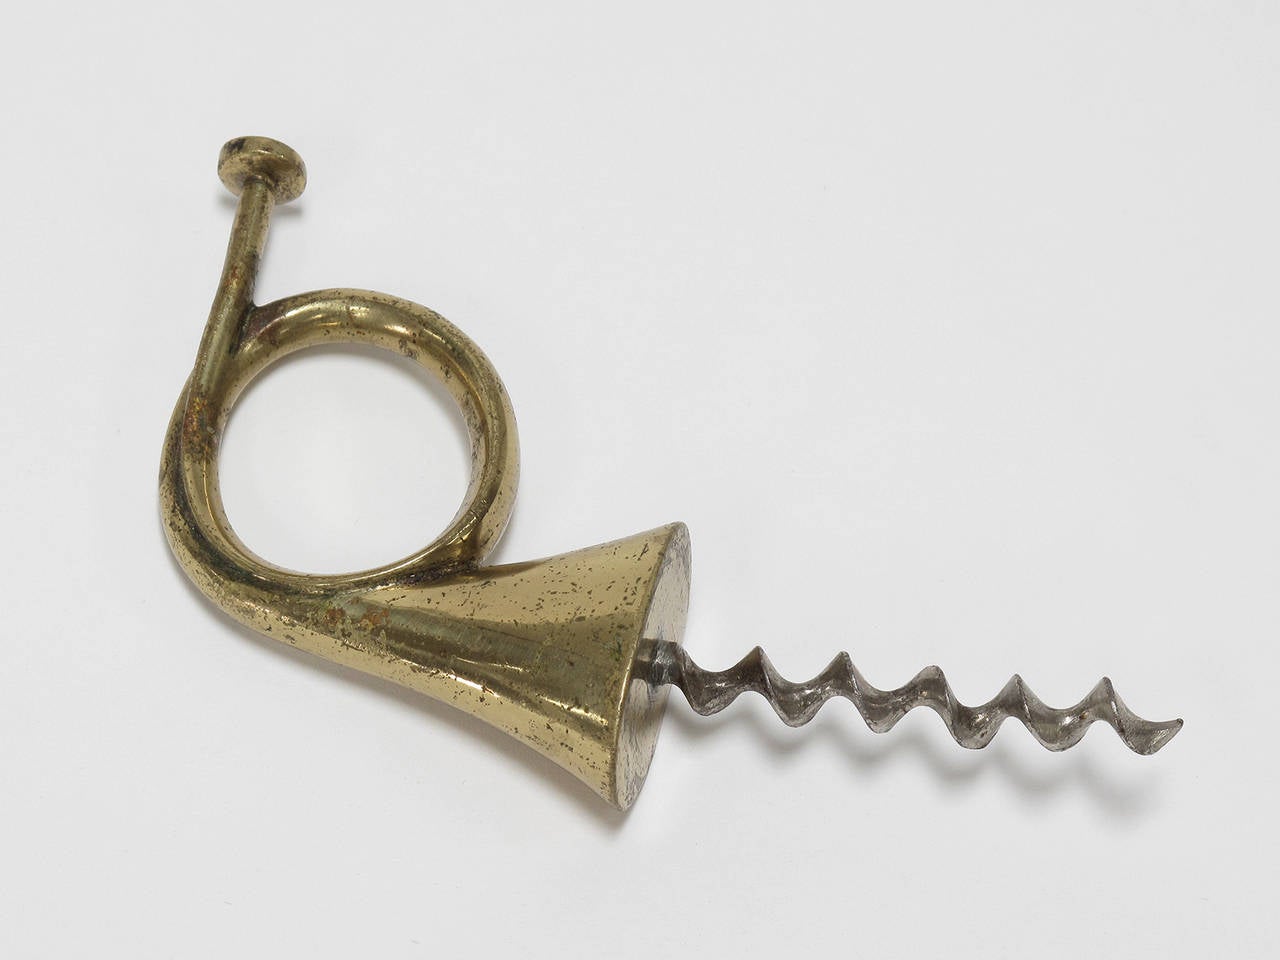 Austrian Carl Aubock 'Horn' Corkscrew, Solid Brass, 1950s